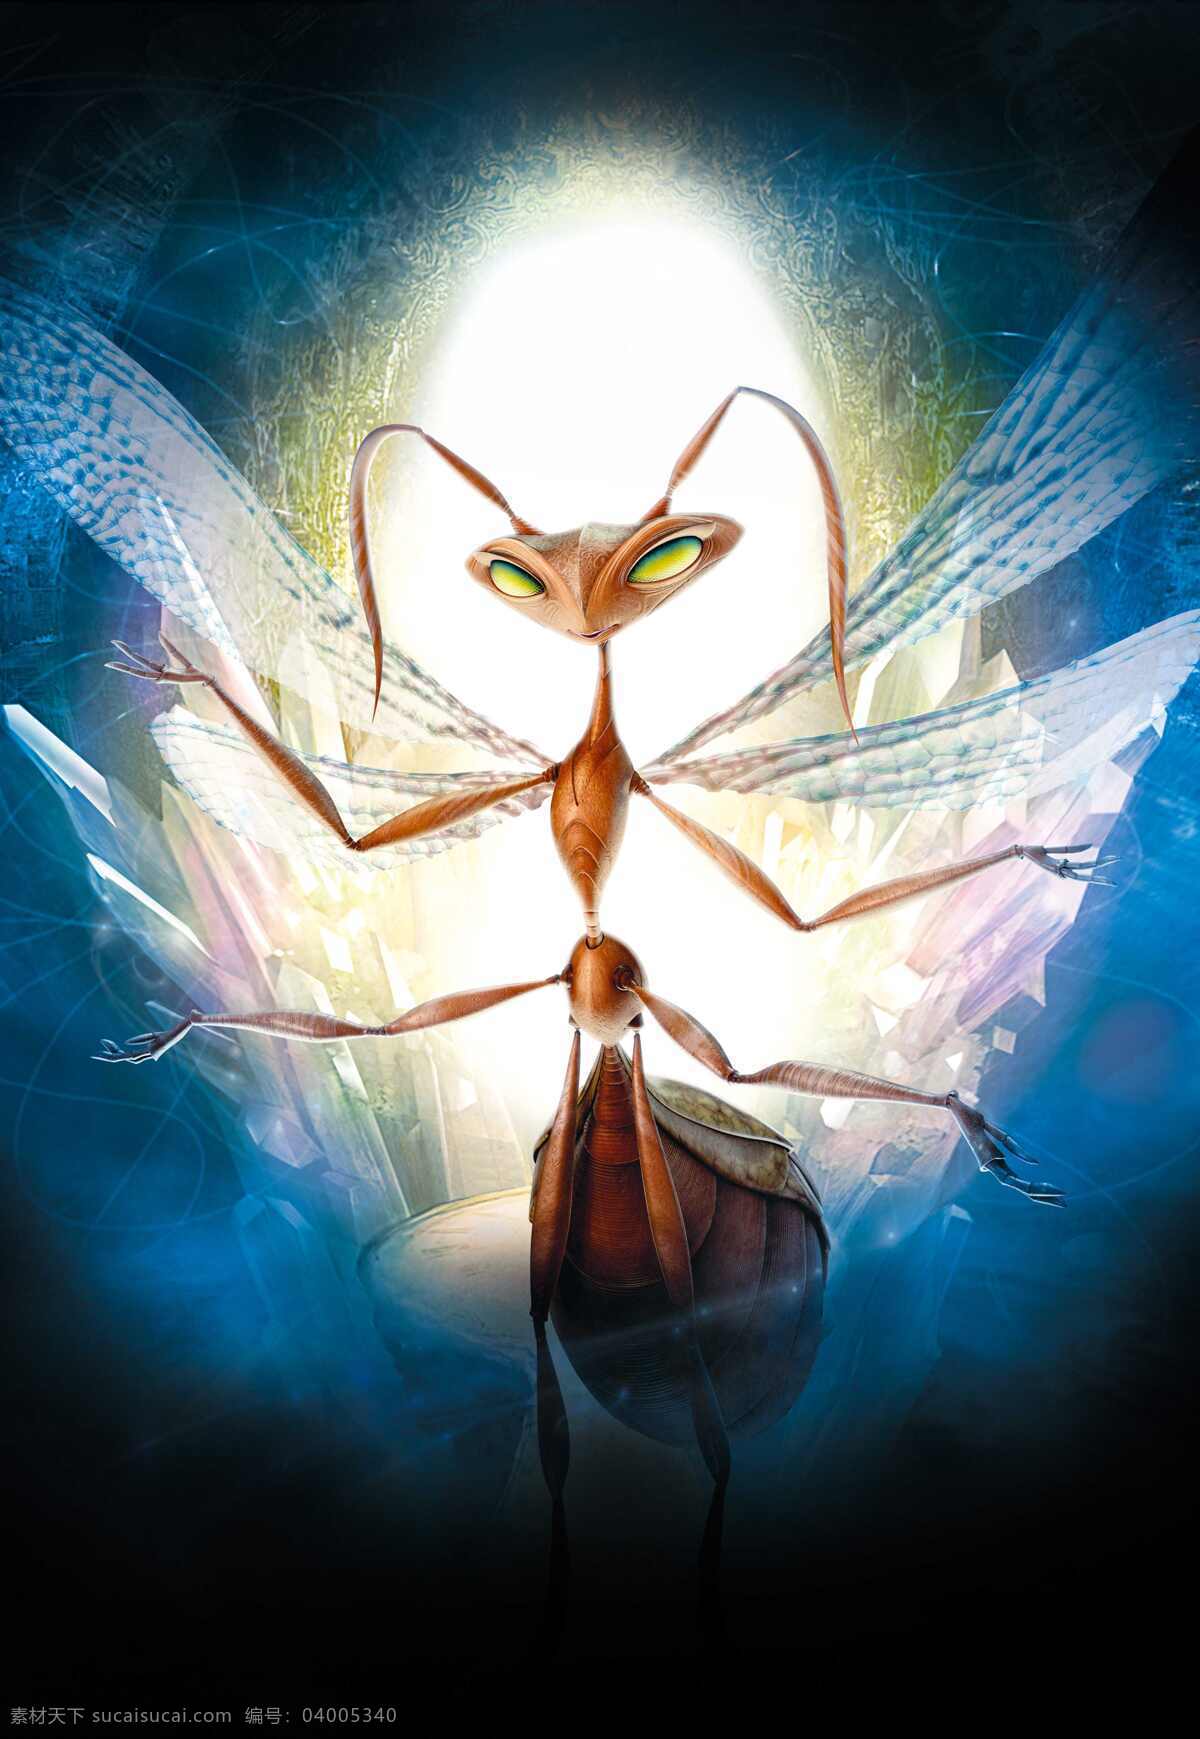 动漫 昆虫 翅膀 动漫动画 蚂蚁 游戏 设计素材 模板下载 动漫昆虫 触角 巢穴